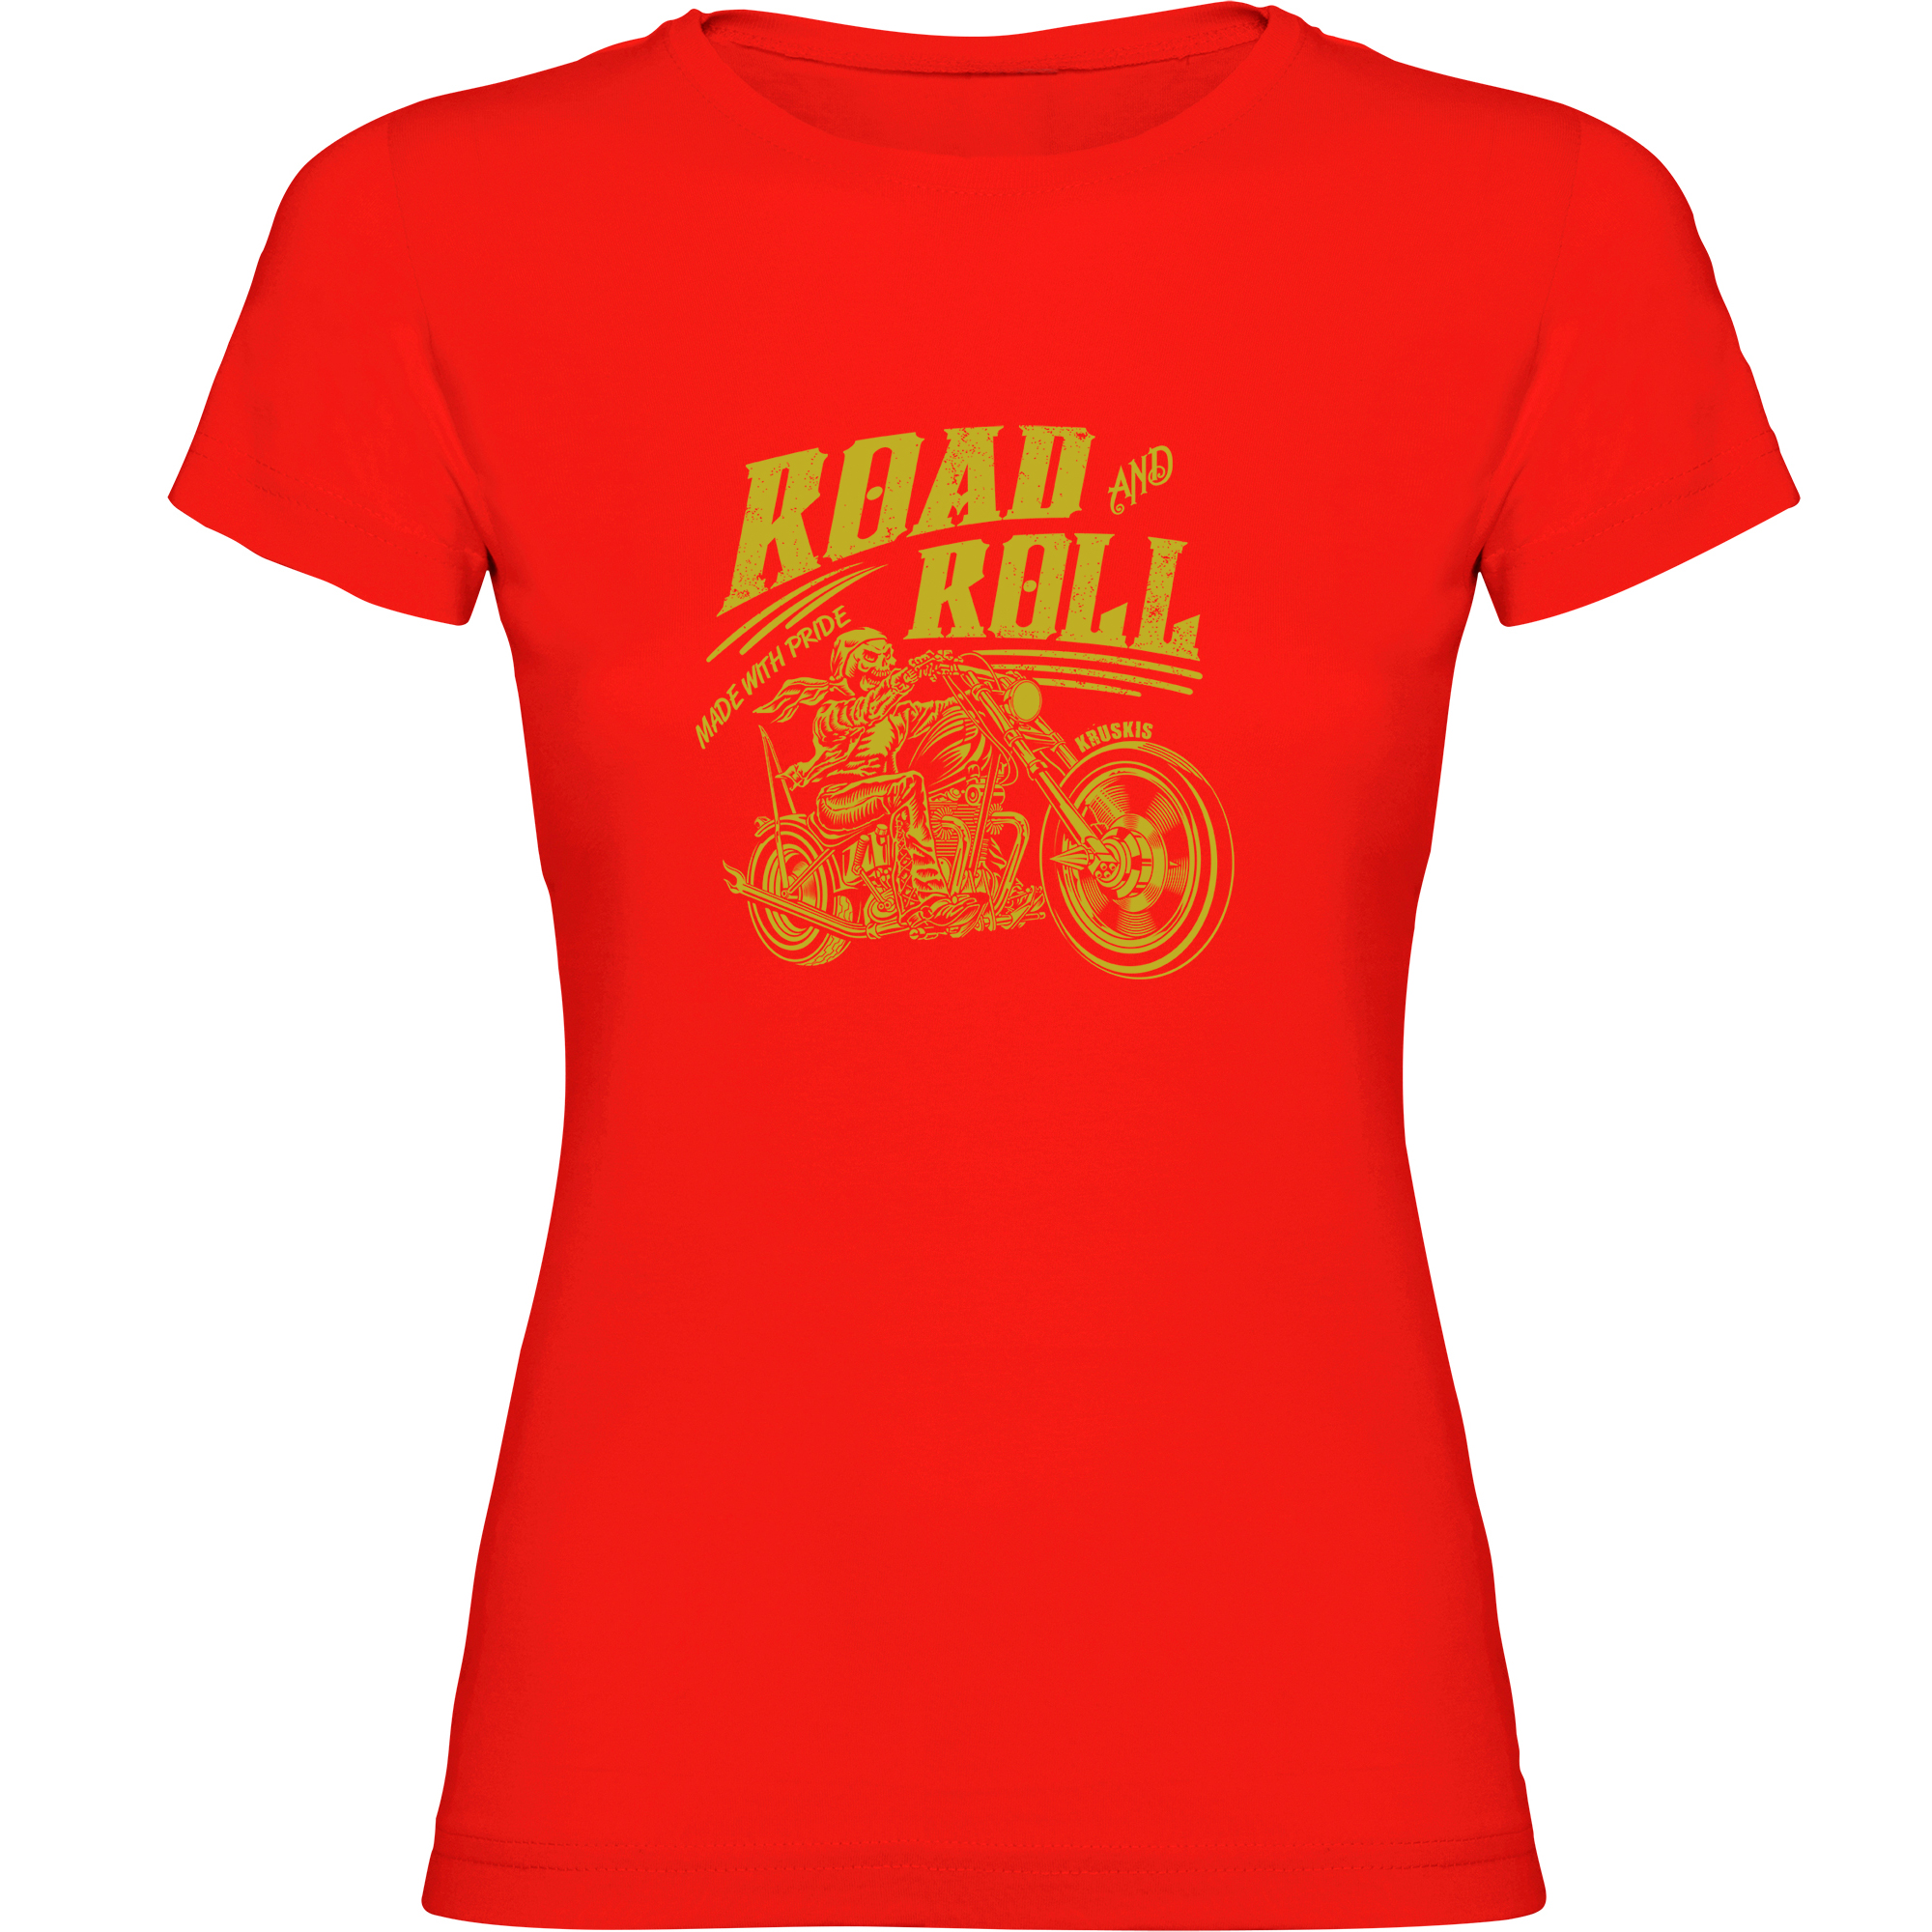 T Shirt Motocykle Road Roll Kortki Rekaw Kobieta